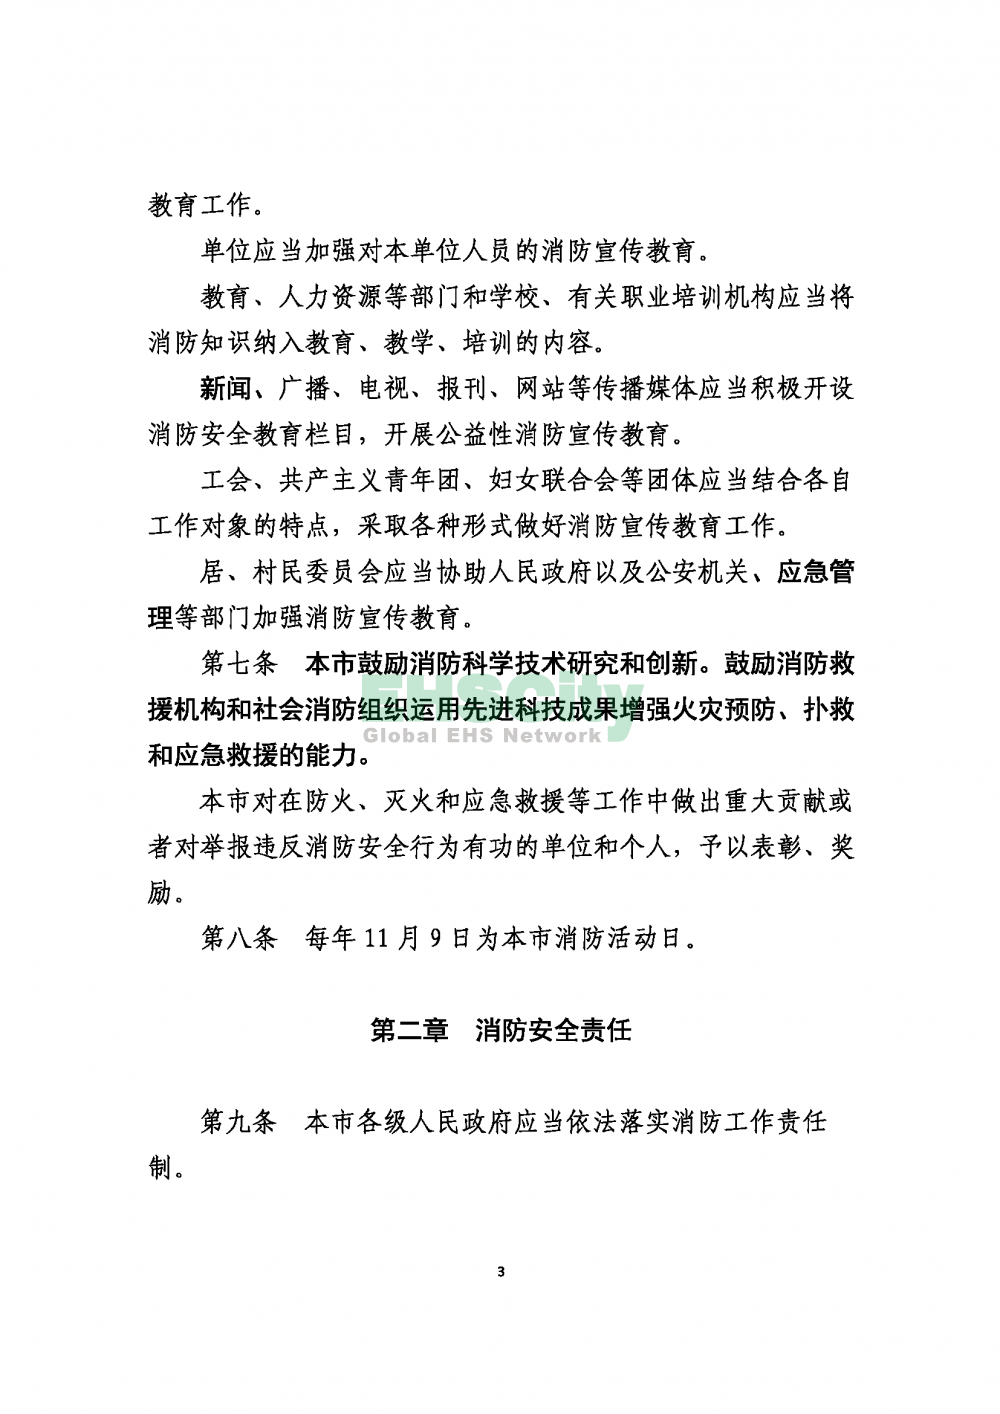 2020版上海消防条例_页面_03